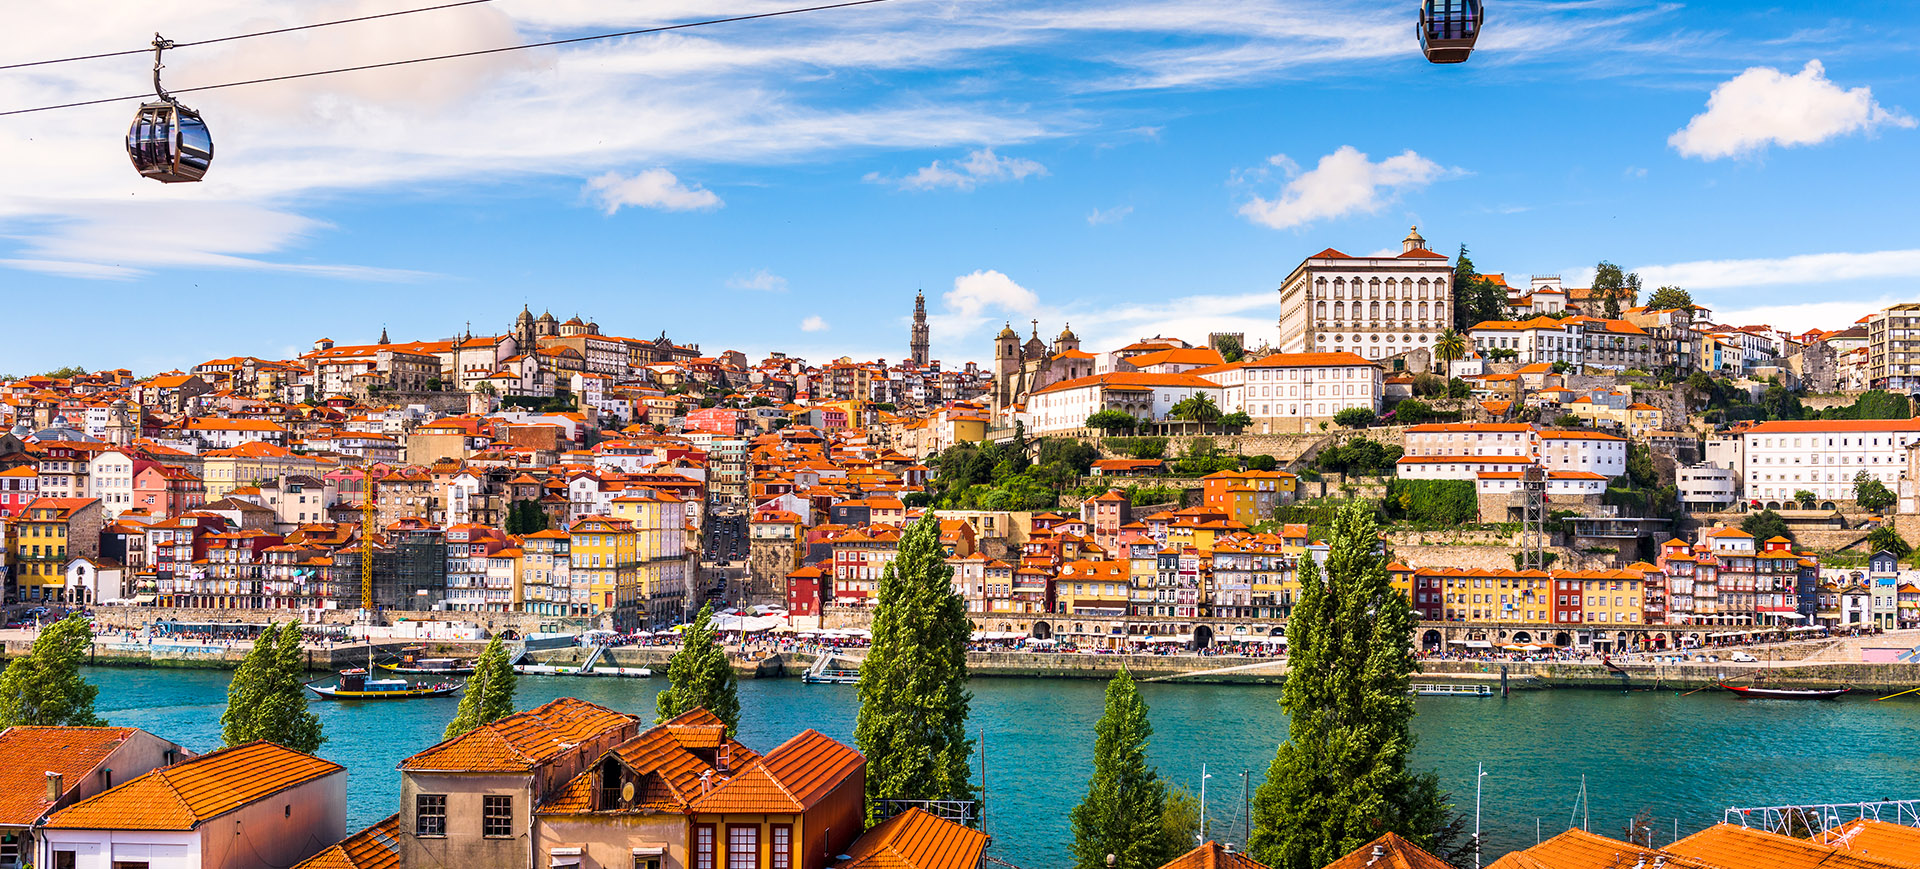 Melhores lugares para viver segundo a Forbes: Porto